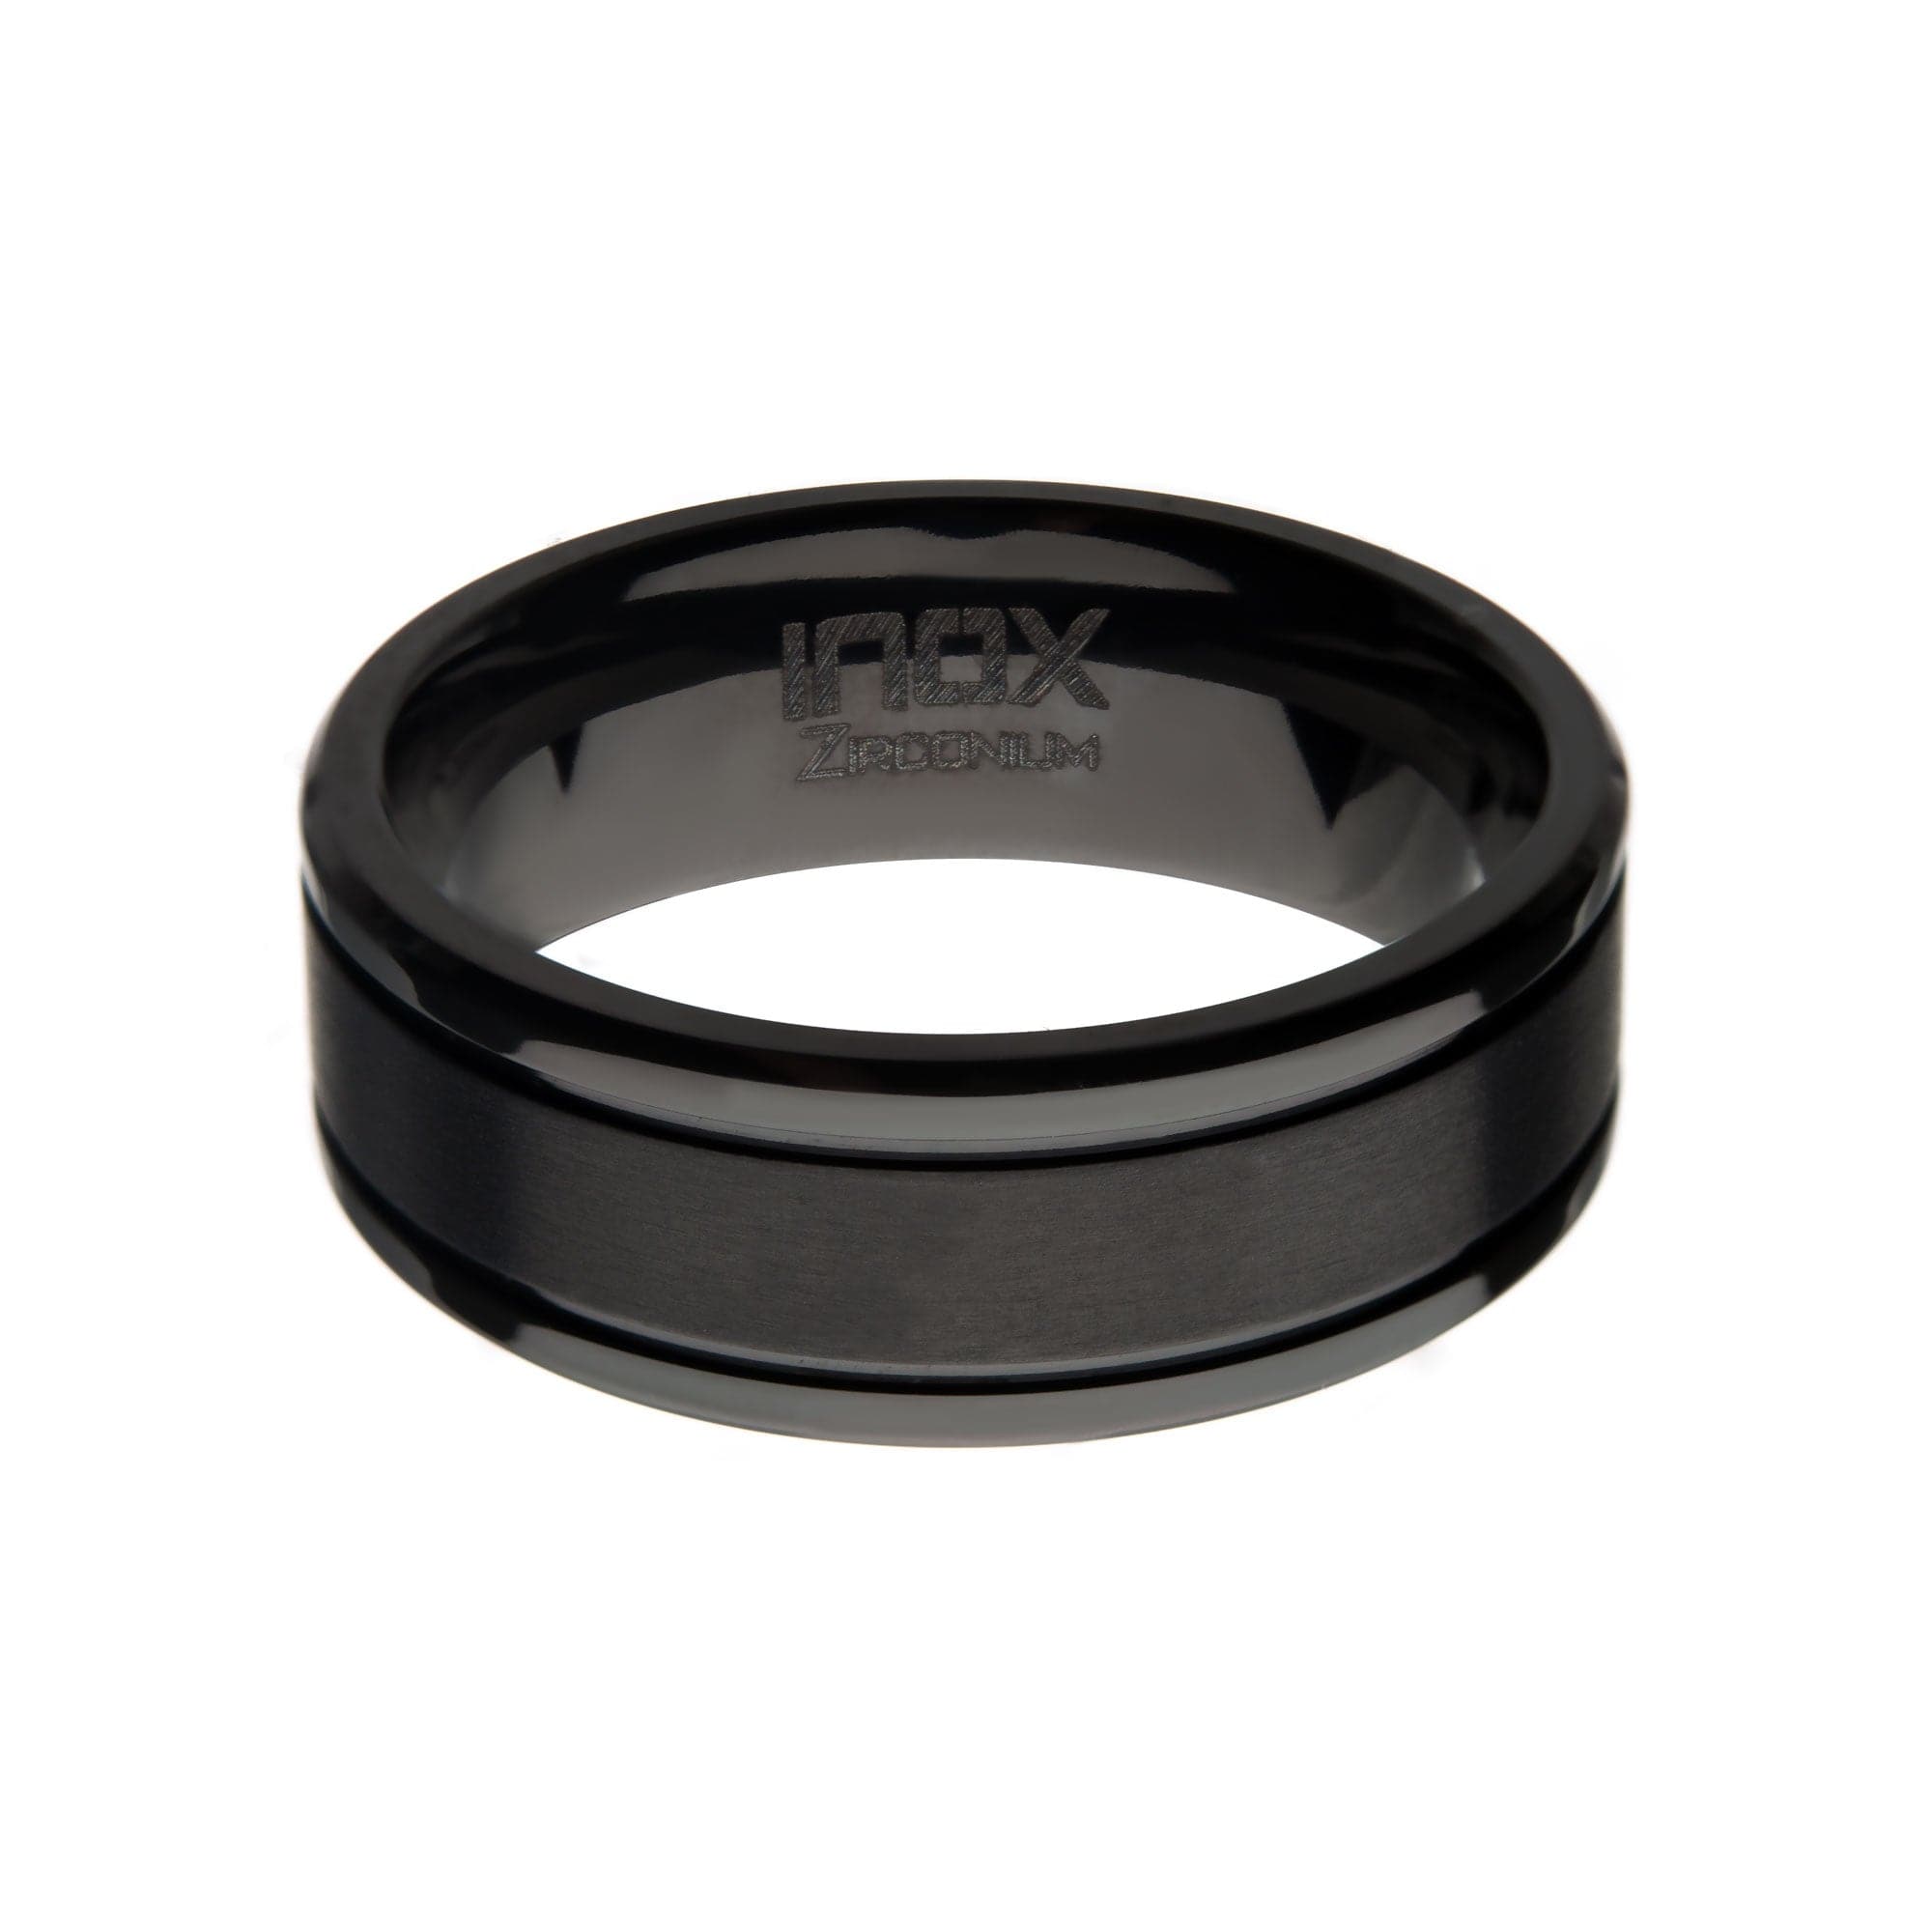 INOX JEWELRY Rings Black Zirconium 8mm Brushed Band Ring